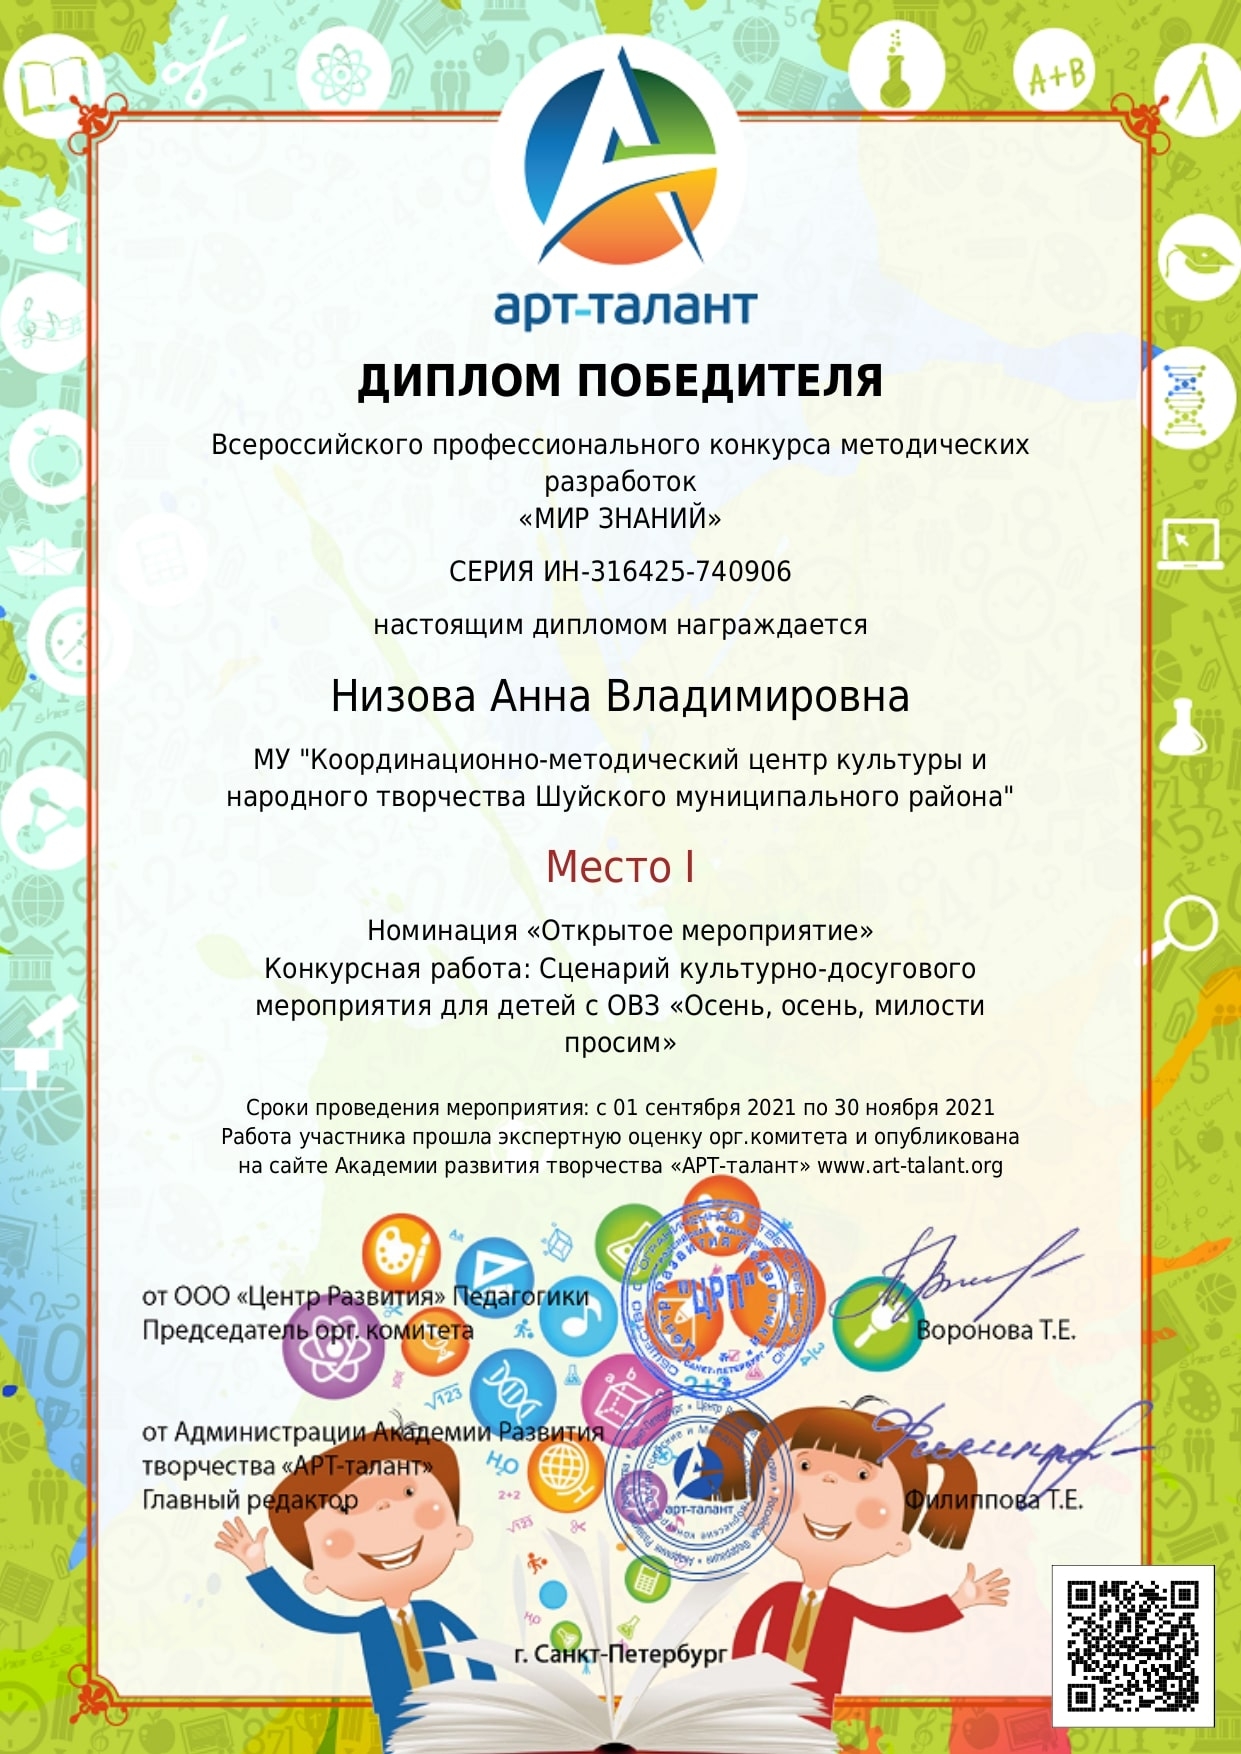 Победа на Всероссийском профессиональном конкурсе методических разработок «Мир знаний»